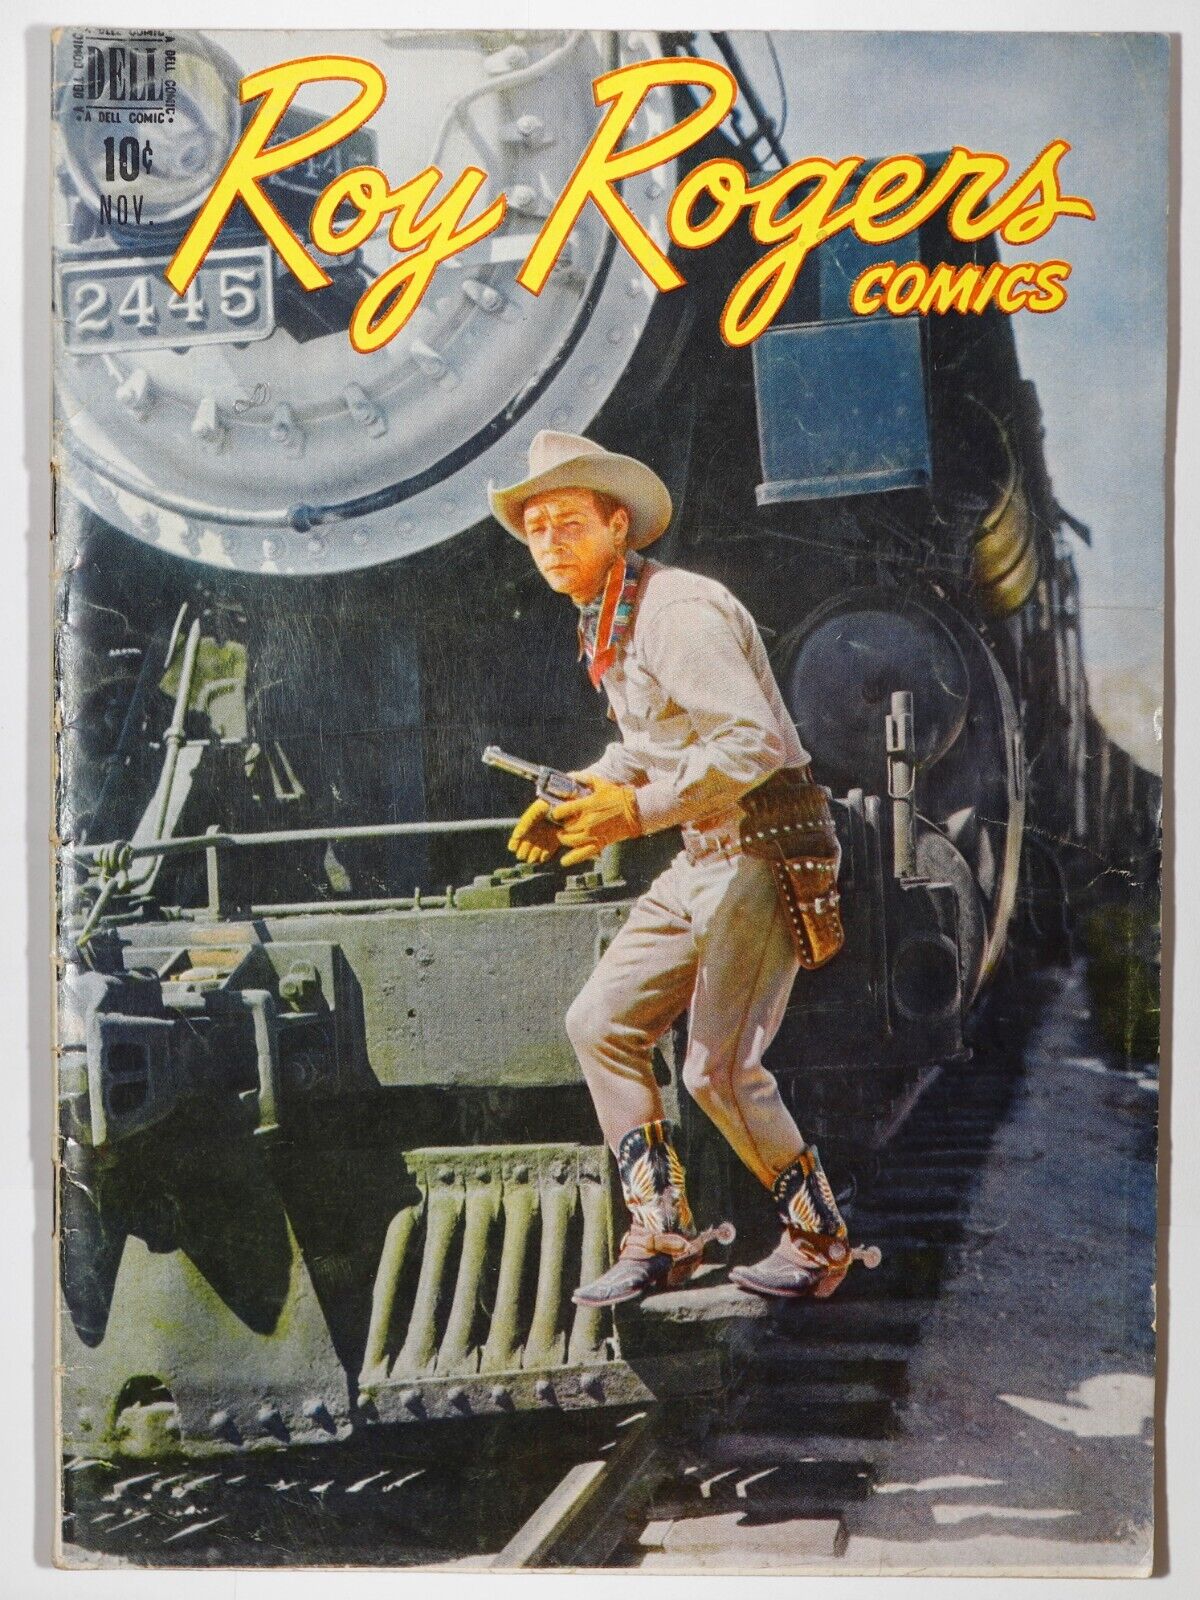 Roy Rogers Comics #11 - $0.10 Dell Pub., Nov. 1948 - VG